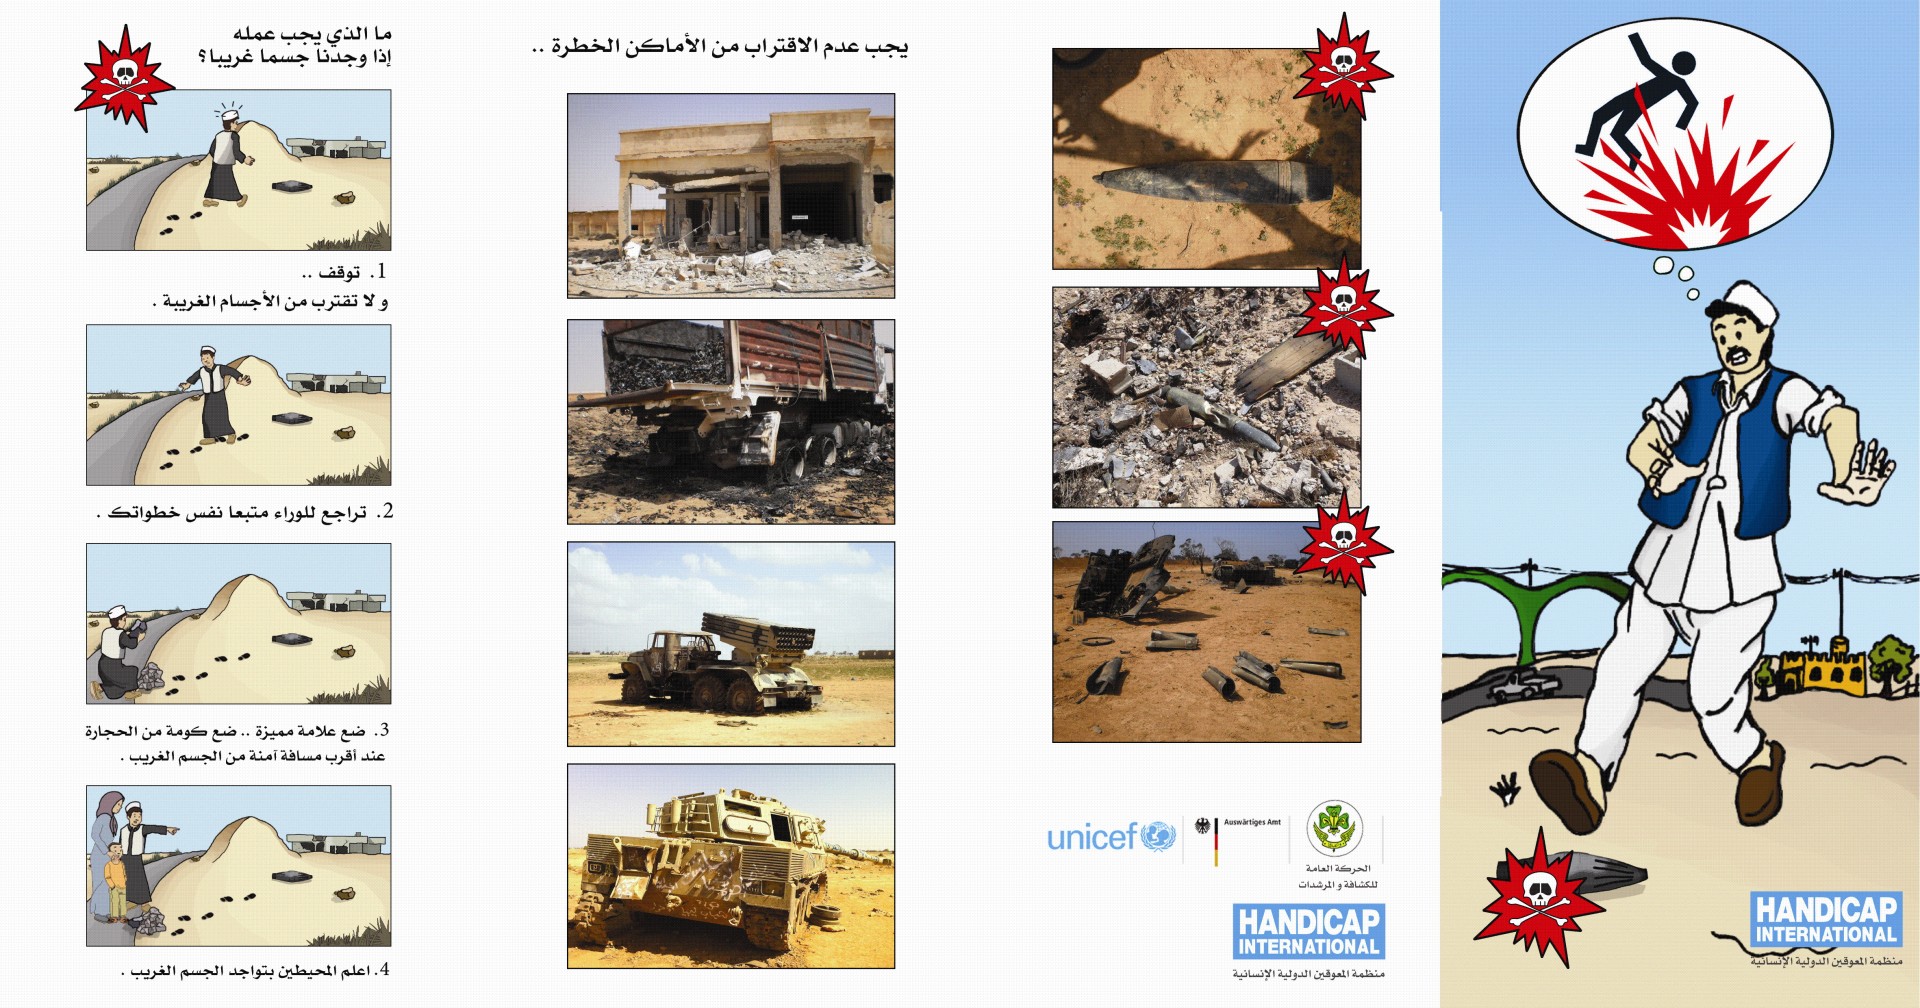 Libye: dépliant destiné à informer des dangers des mines